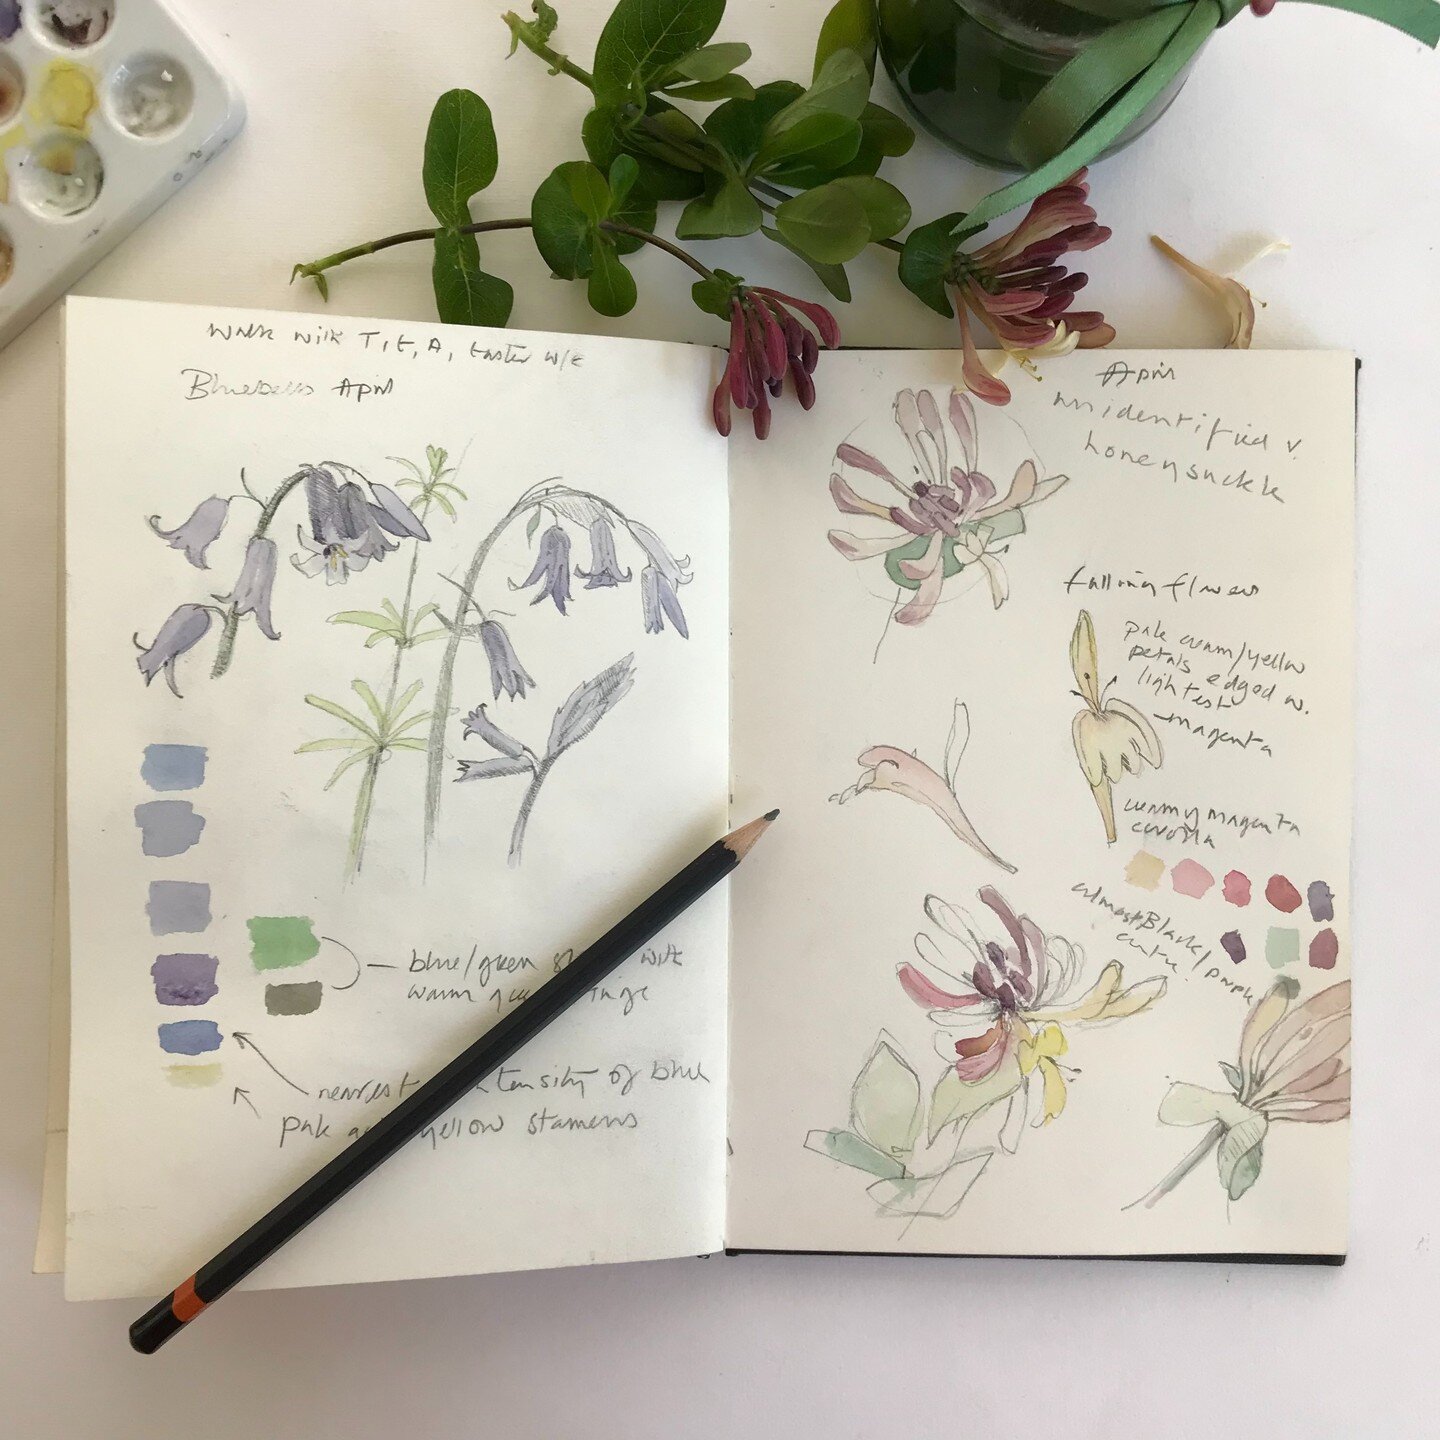 我对画花是我的工作需要我的别的地方。今天也是从花园里摘金银花。# drawingflowers # womenwhoweed # inmygarden # joyofdrawing # suffolkartists # gardenersinsuffolk # artiststhatgarden #艺术品